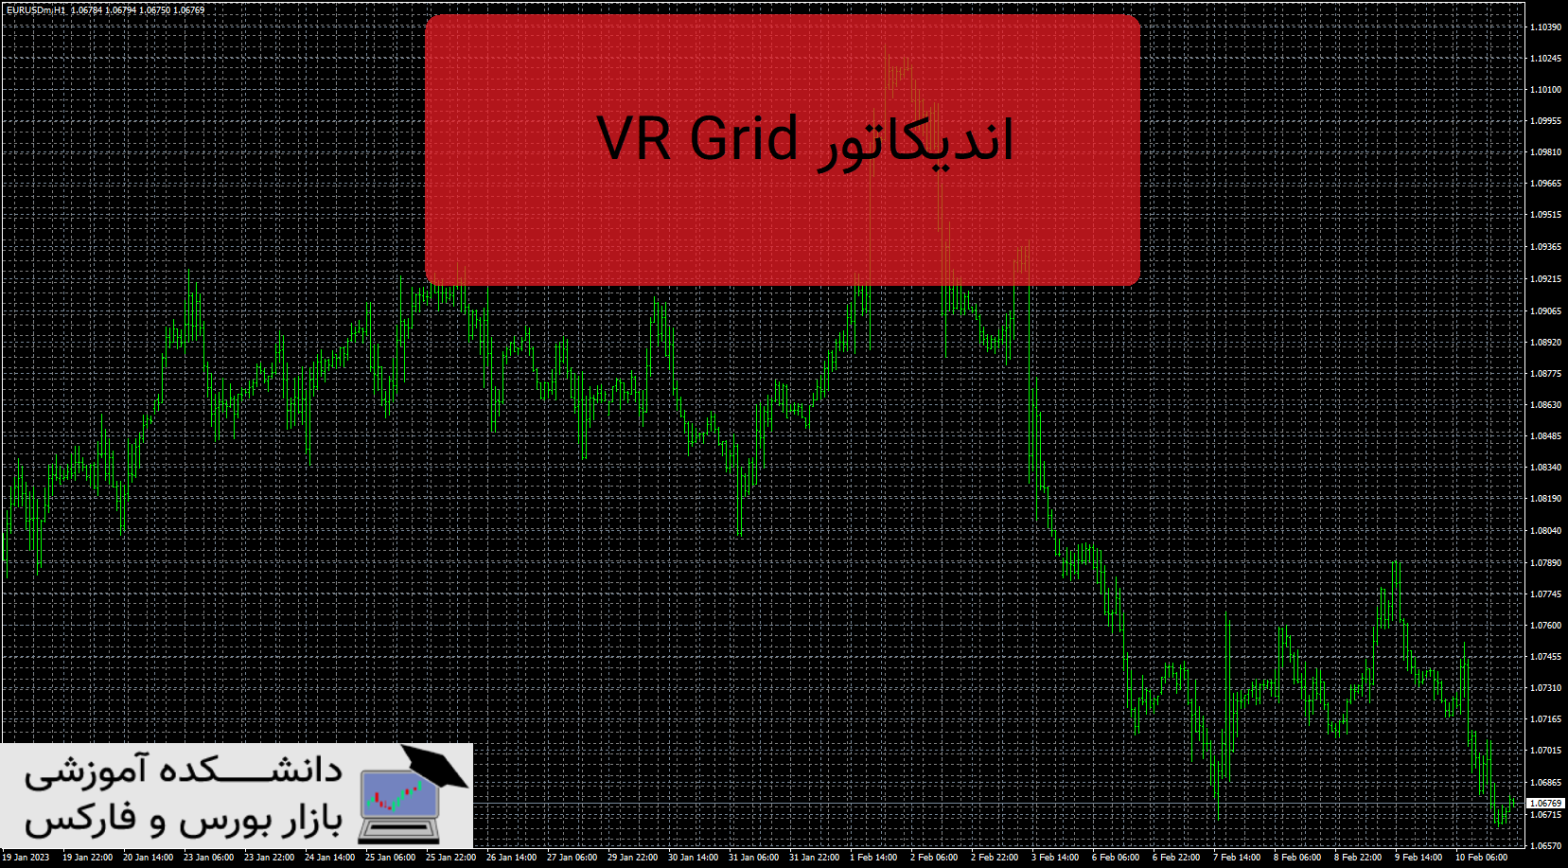 VR Grid دانلود و معرفی اندیکاتور